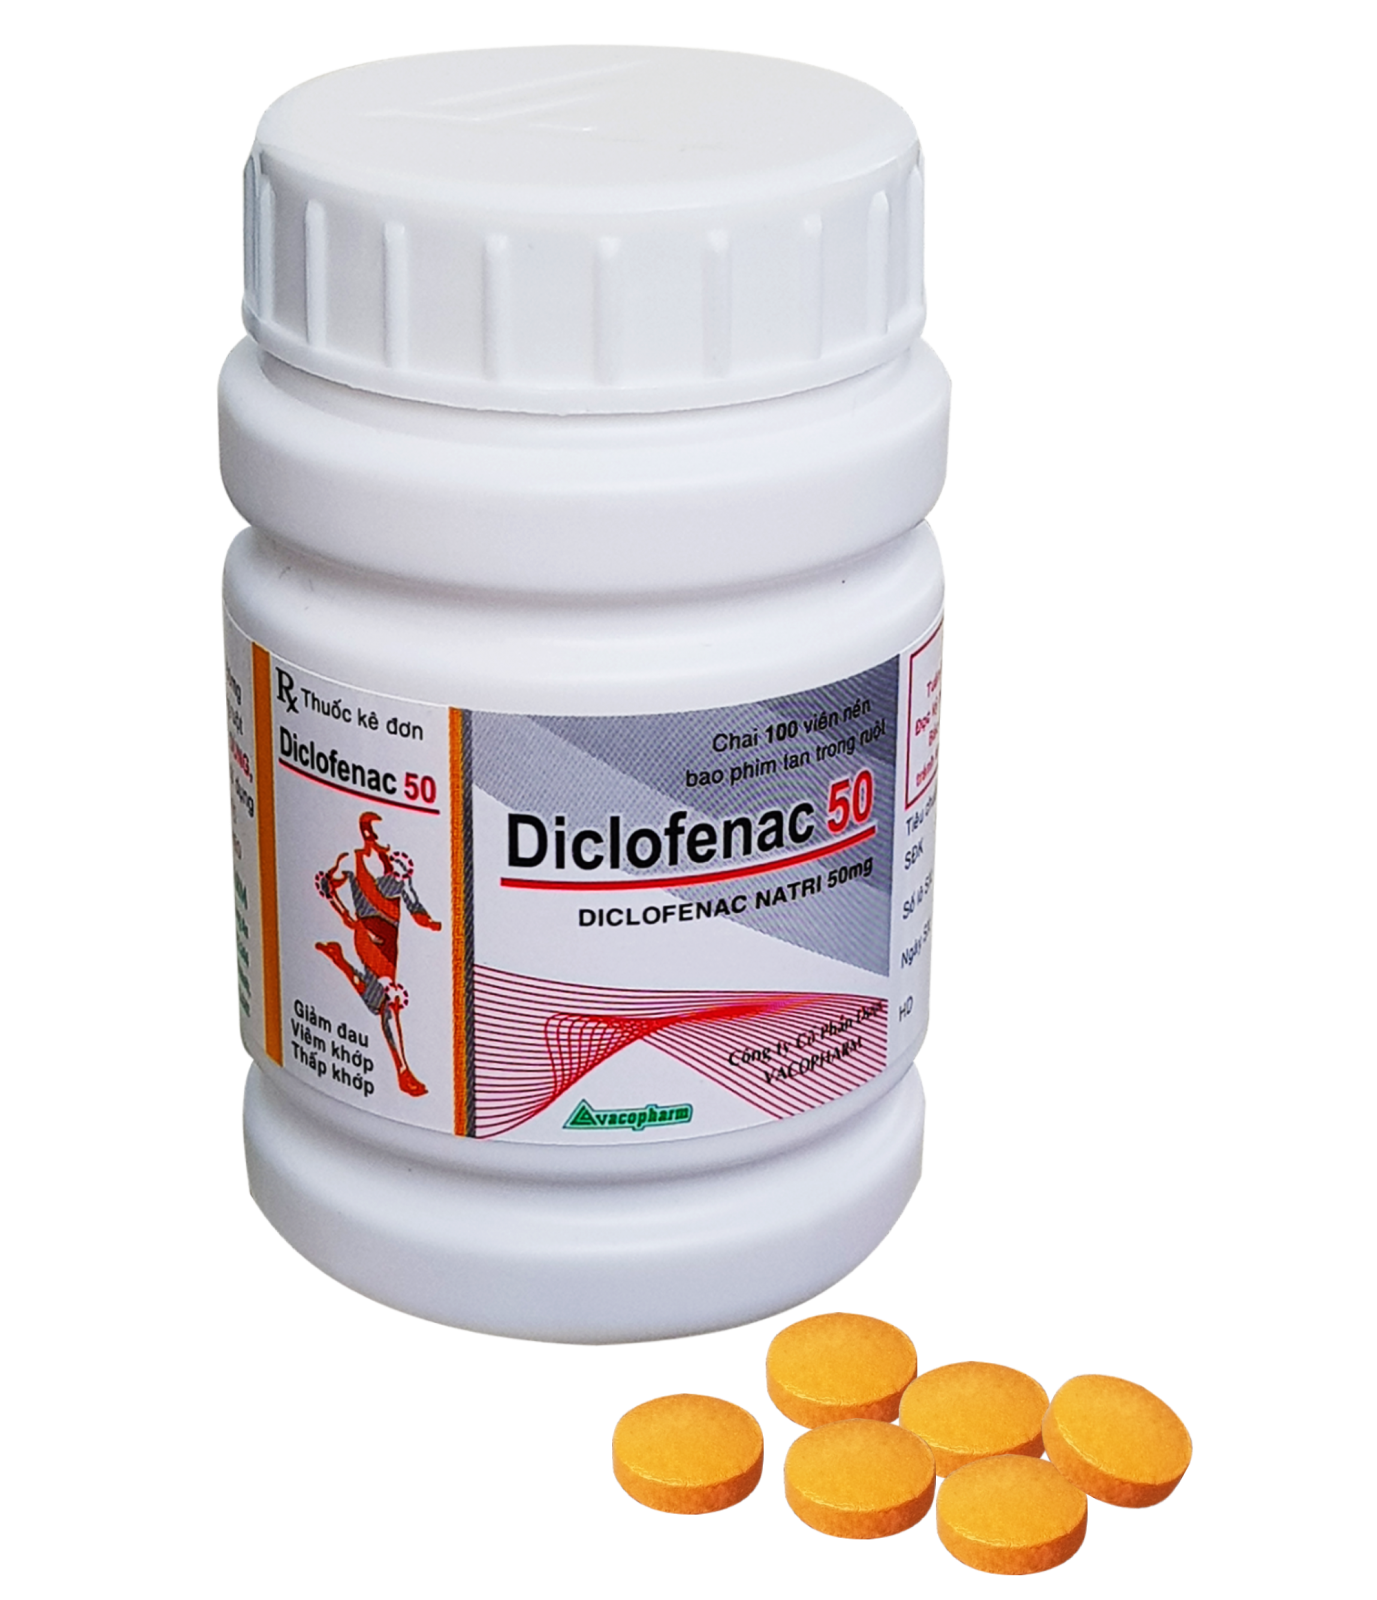 Dùng diclofenac 50mg để điều trị những bệnh nào?
